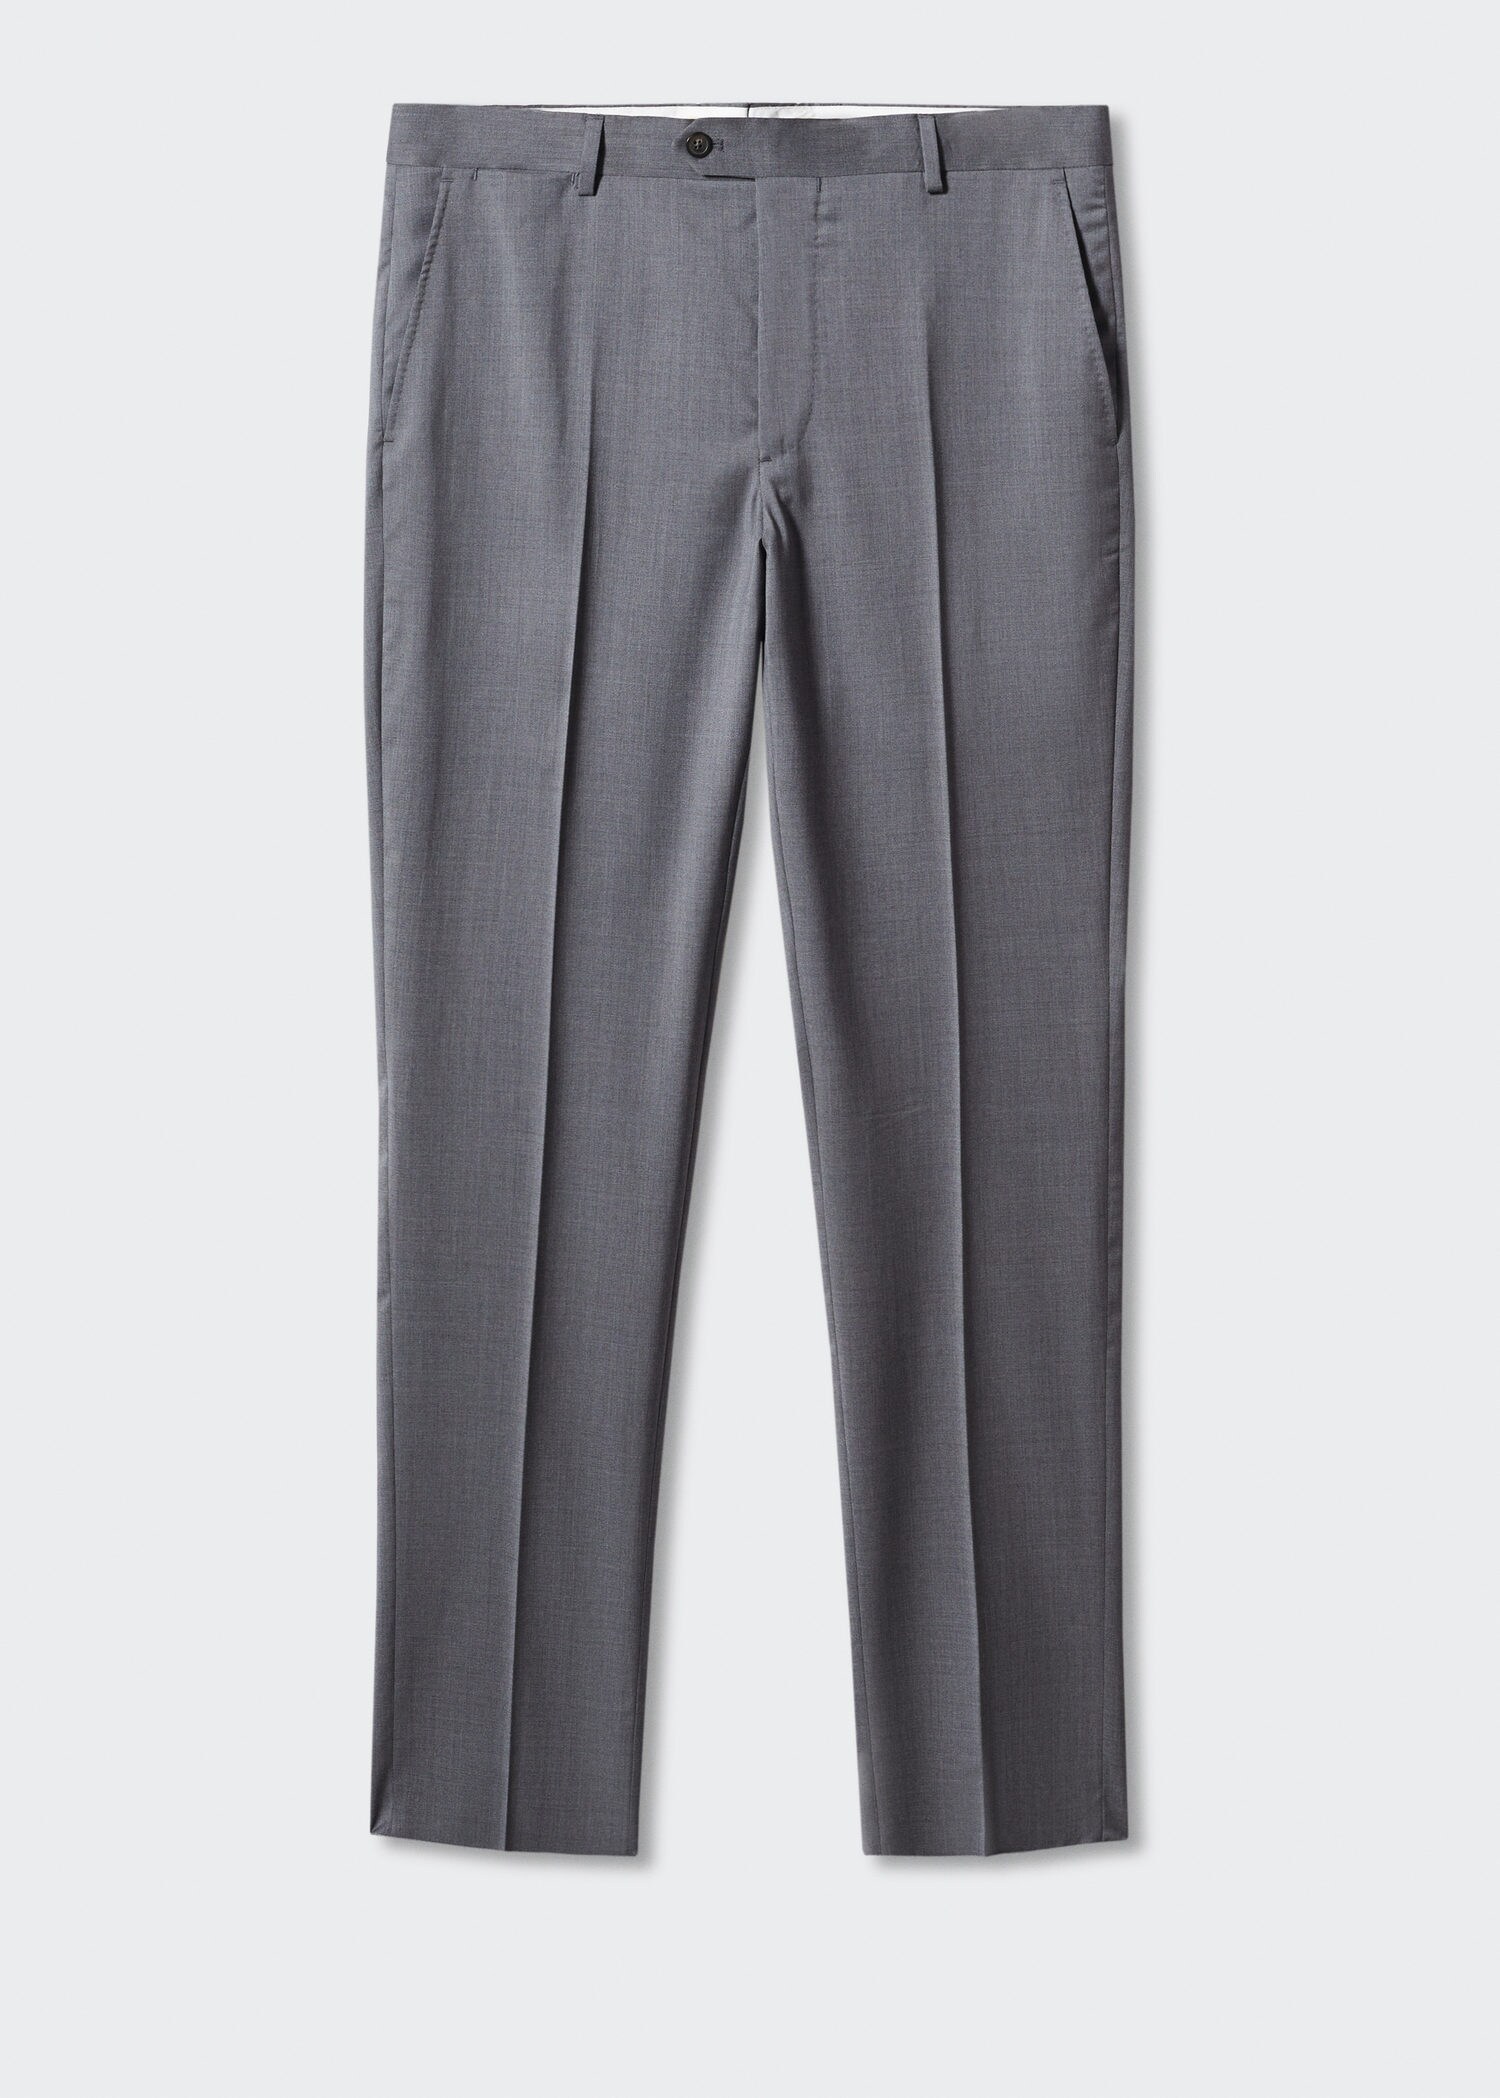 Pantalons vestir slim fit llana verge - Article sense model